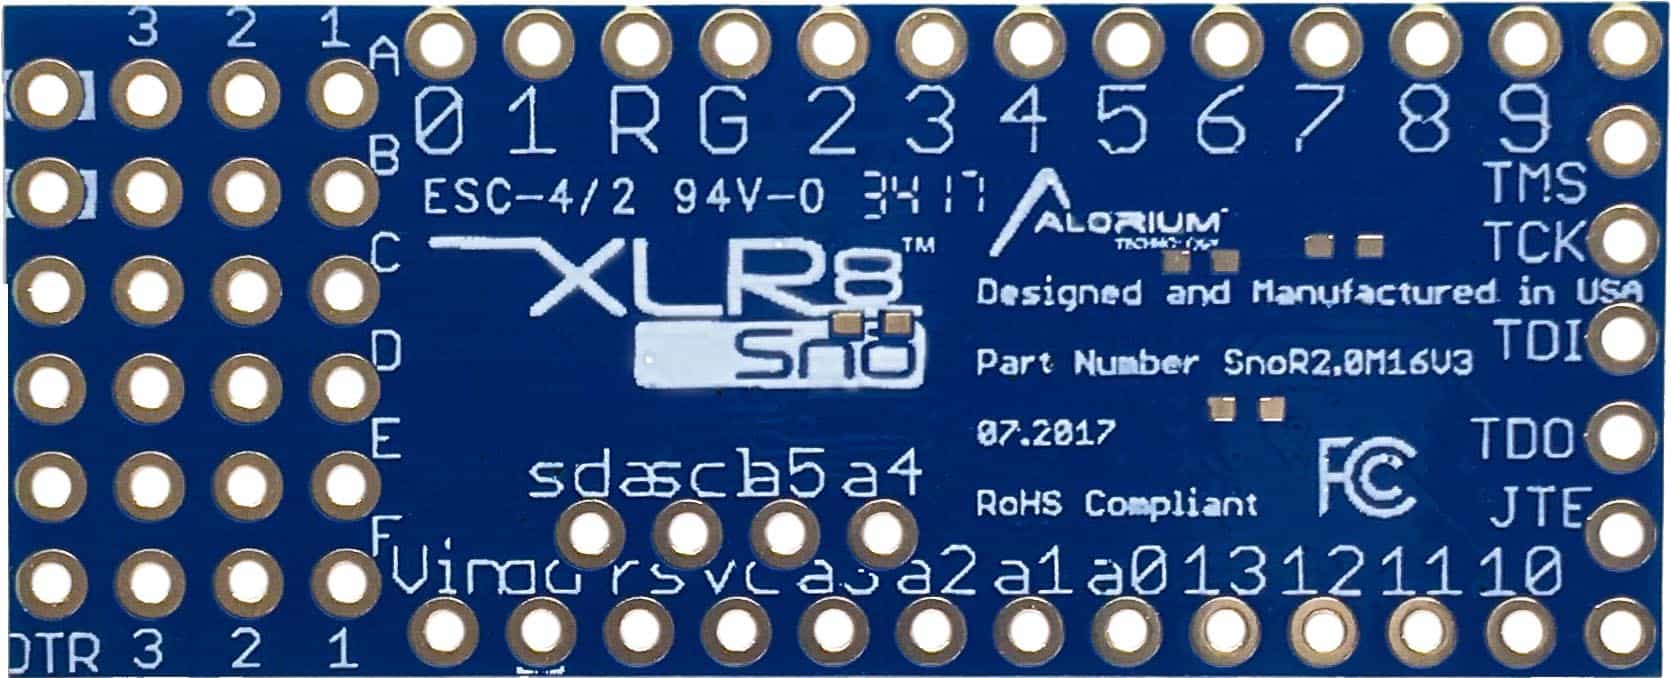 Snō Bottom | Small FPGA Module | Arduino Compatible